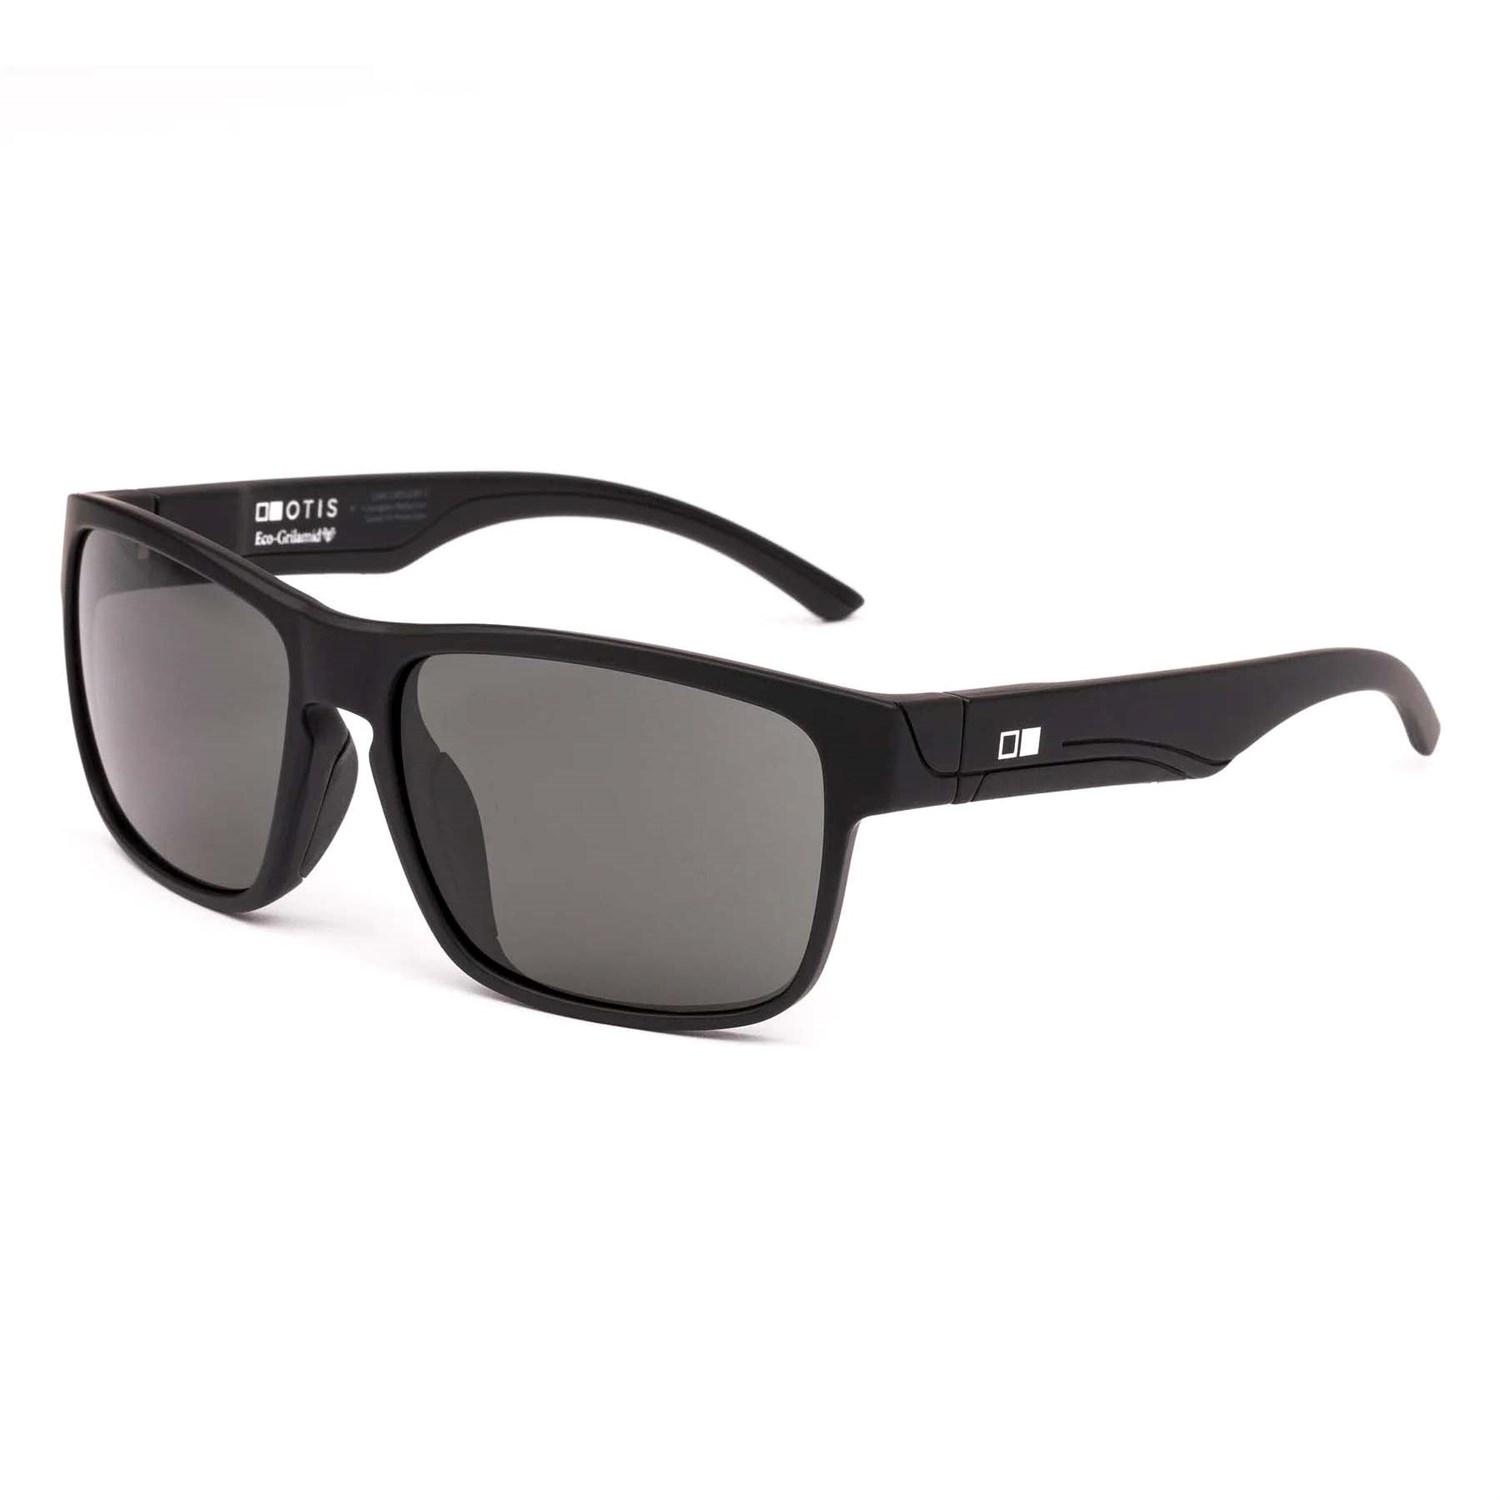 Солнцезащитные очки OTIS Rambler Sport X, цвет Matte Black/L.I.T. Grey Polar солнцезащитные очки otis after dark x коричневый